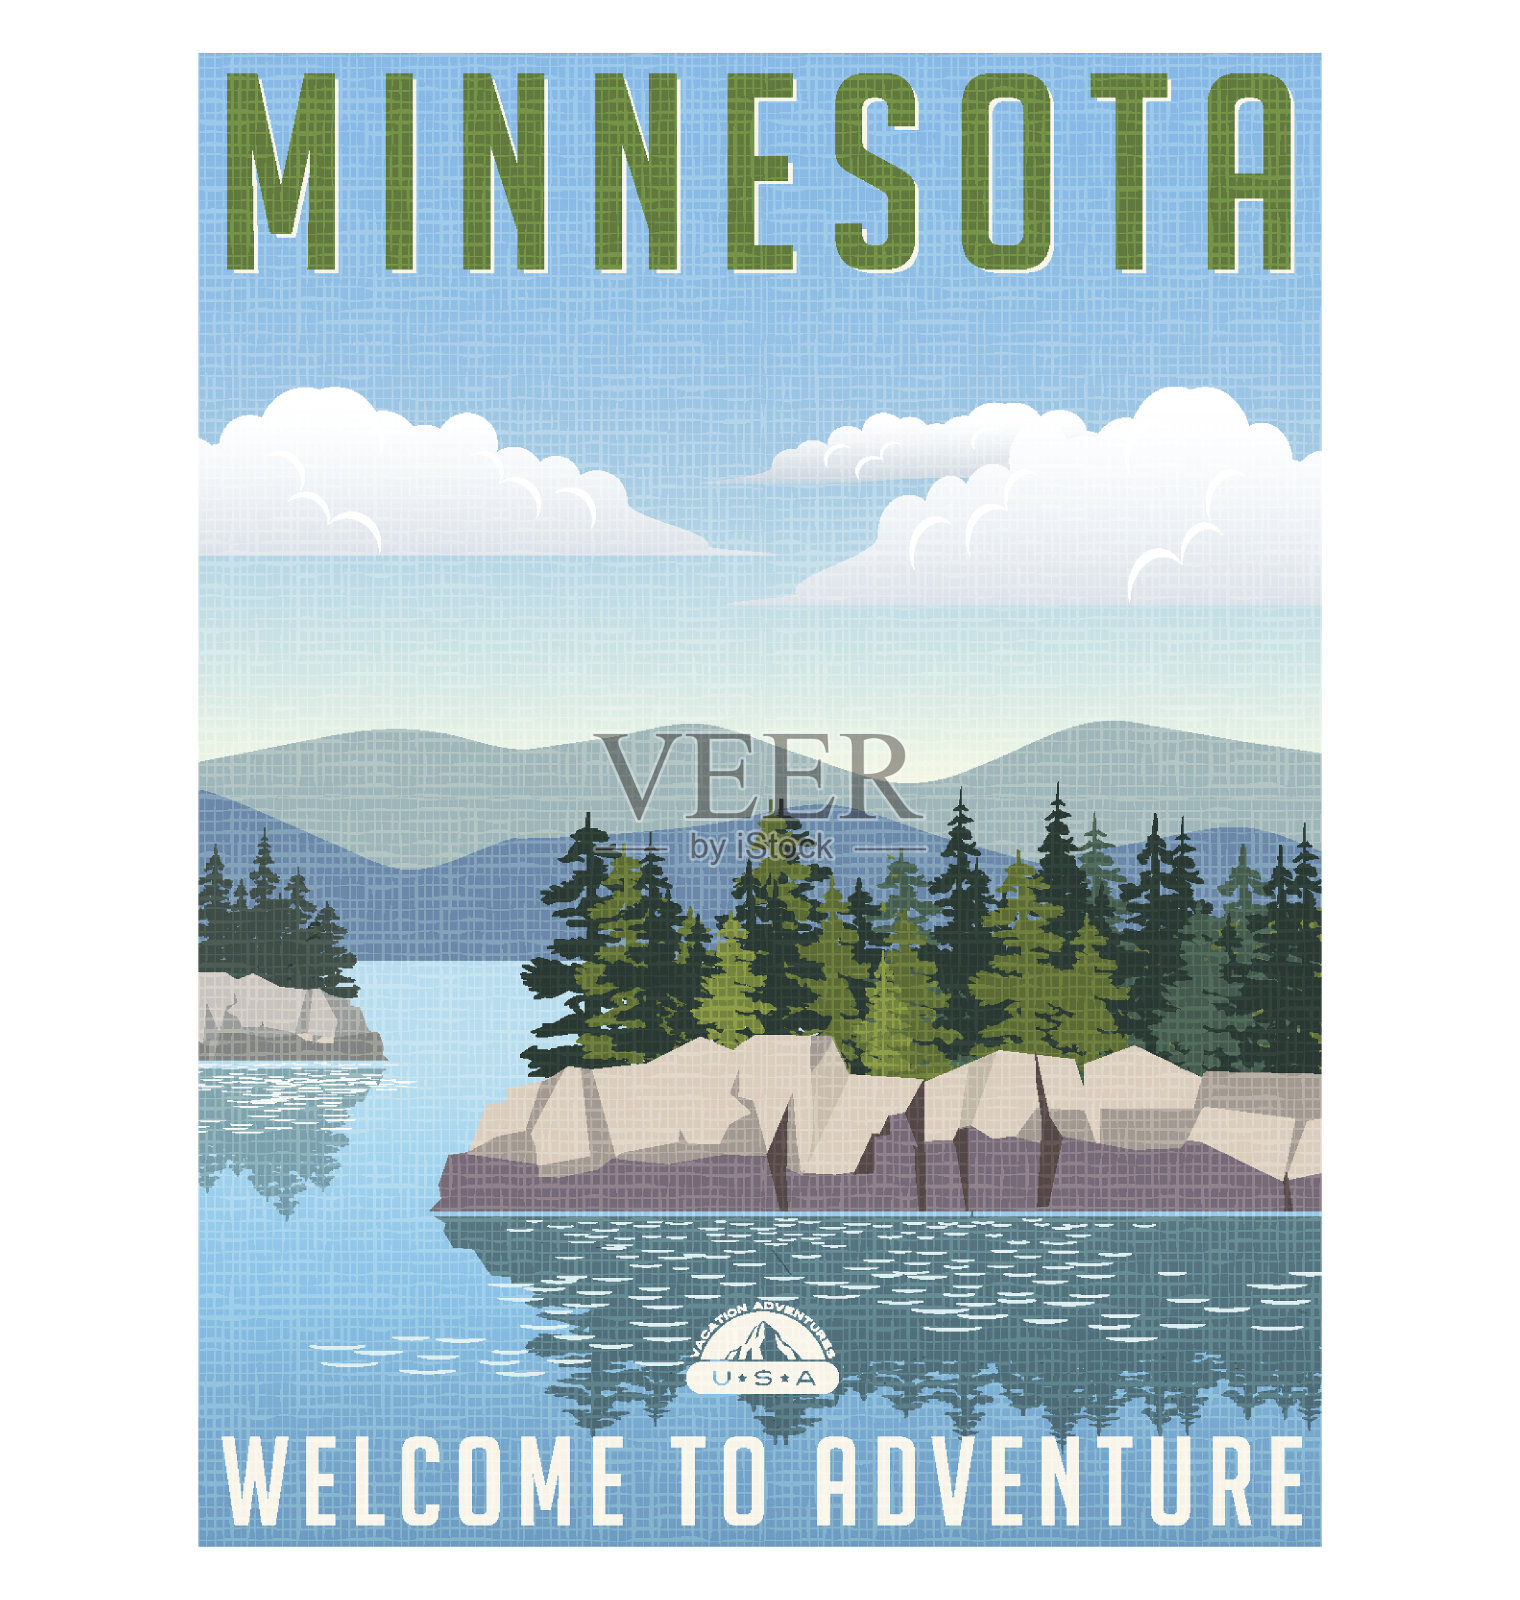 复古风格的旅行海报或贴纸。美国明尼苏达州风景秀丽的湖泊设计模板素材